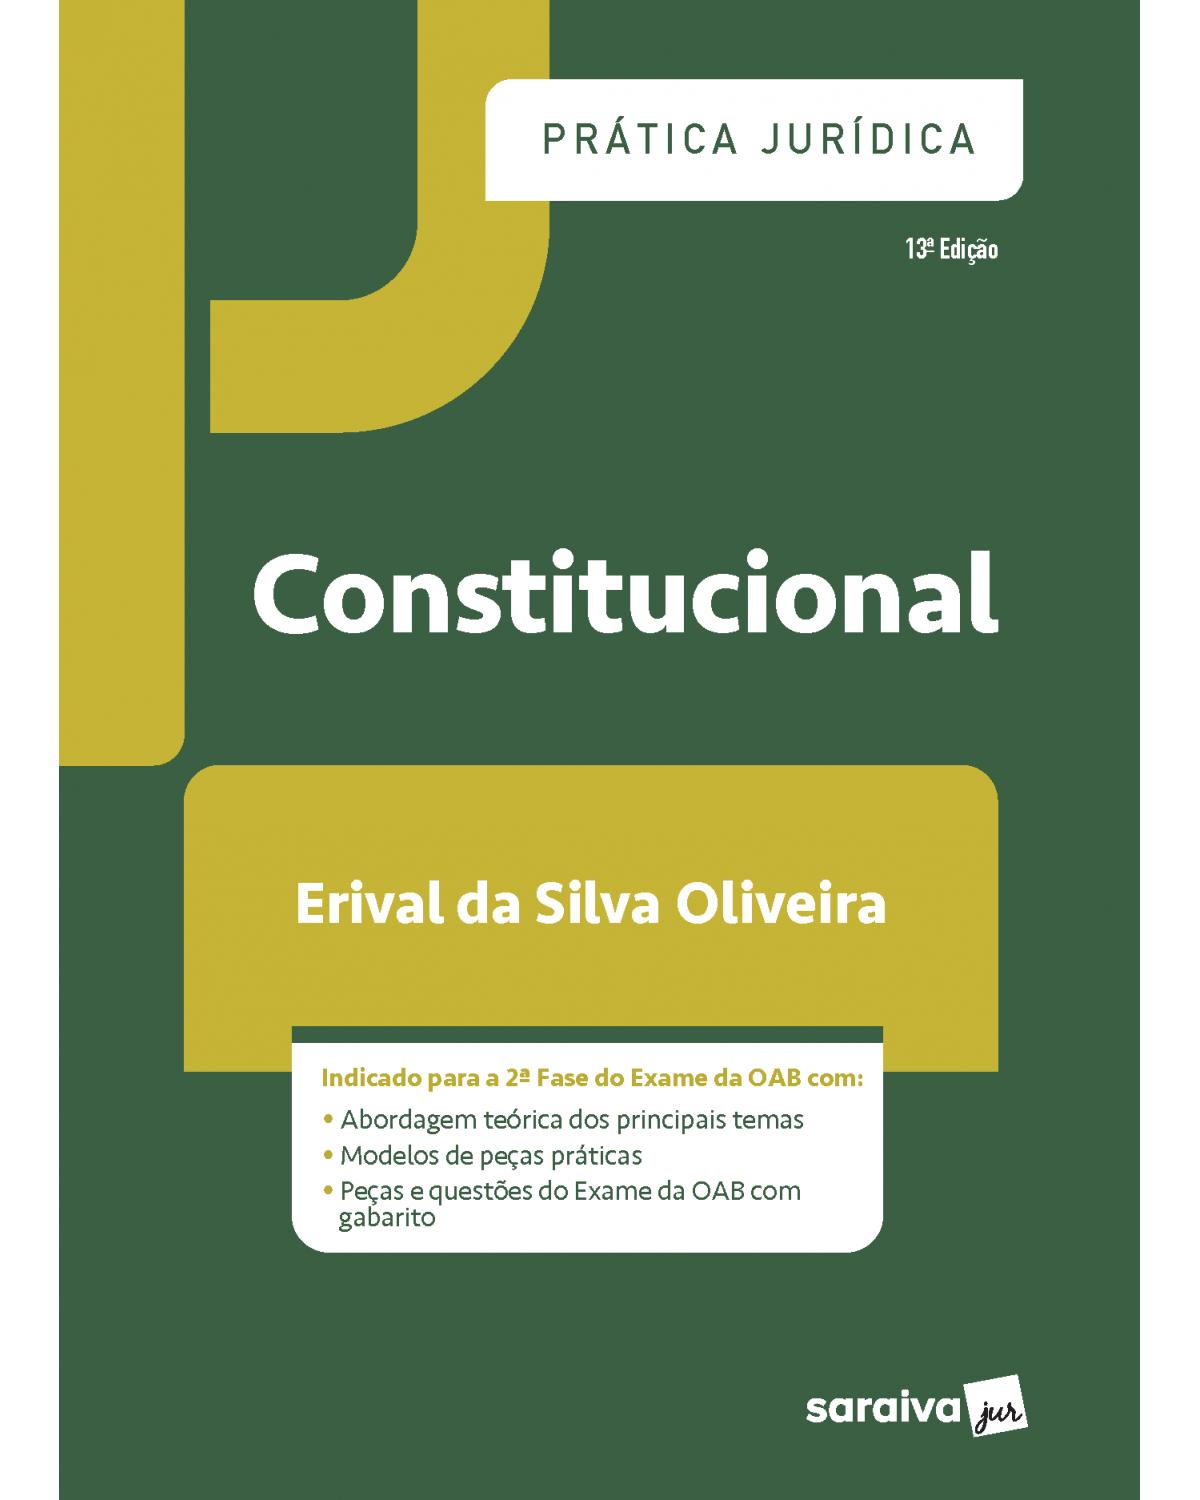 Prática jurídica constitucional - 13ª Edição | 2021